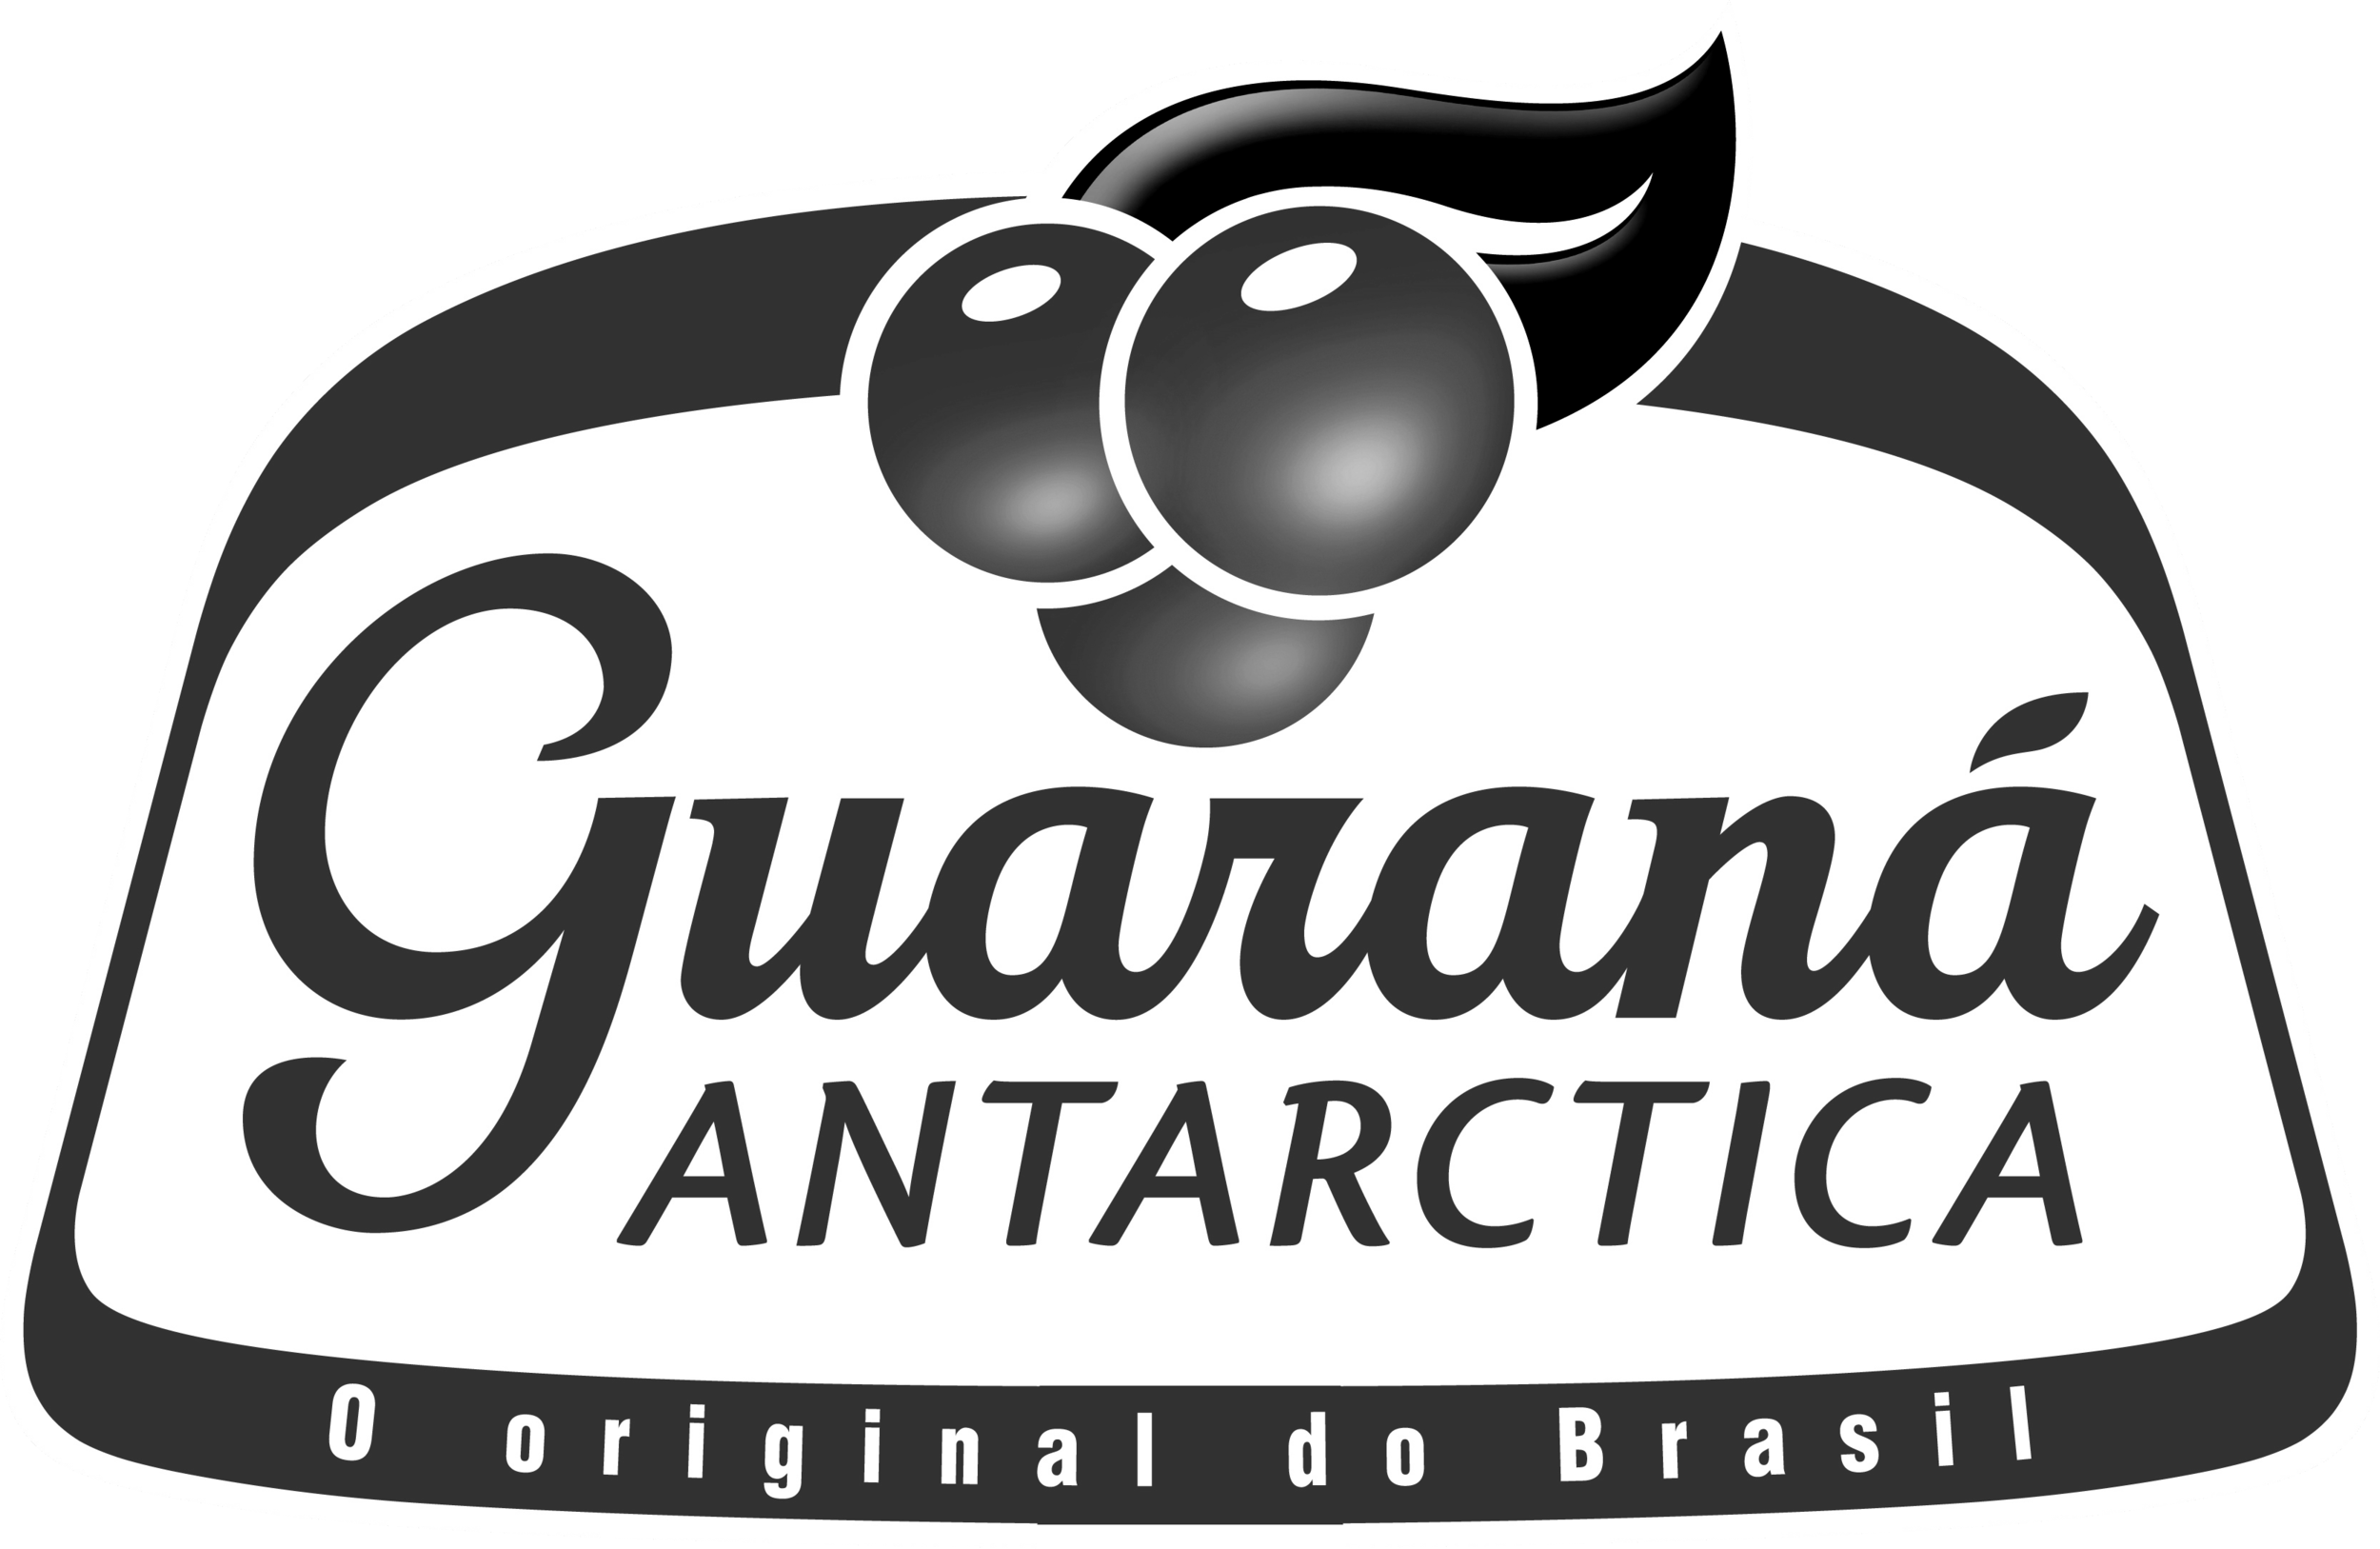 guarana-logo-antartica copy.png